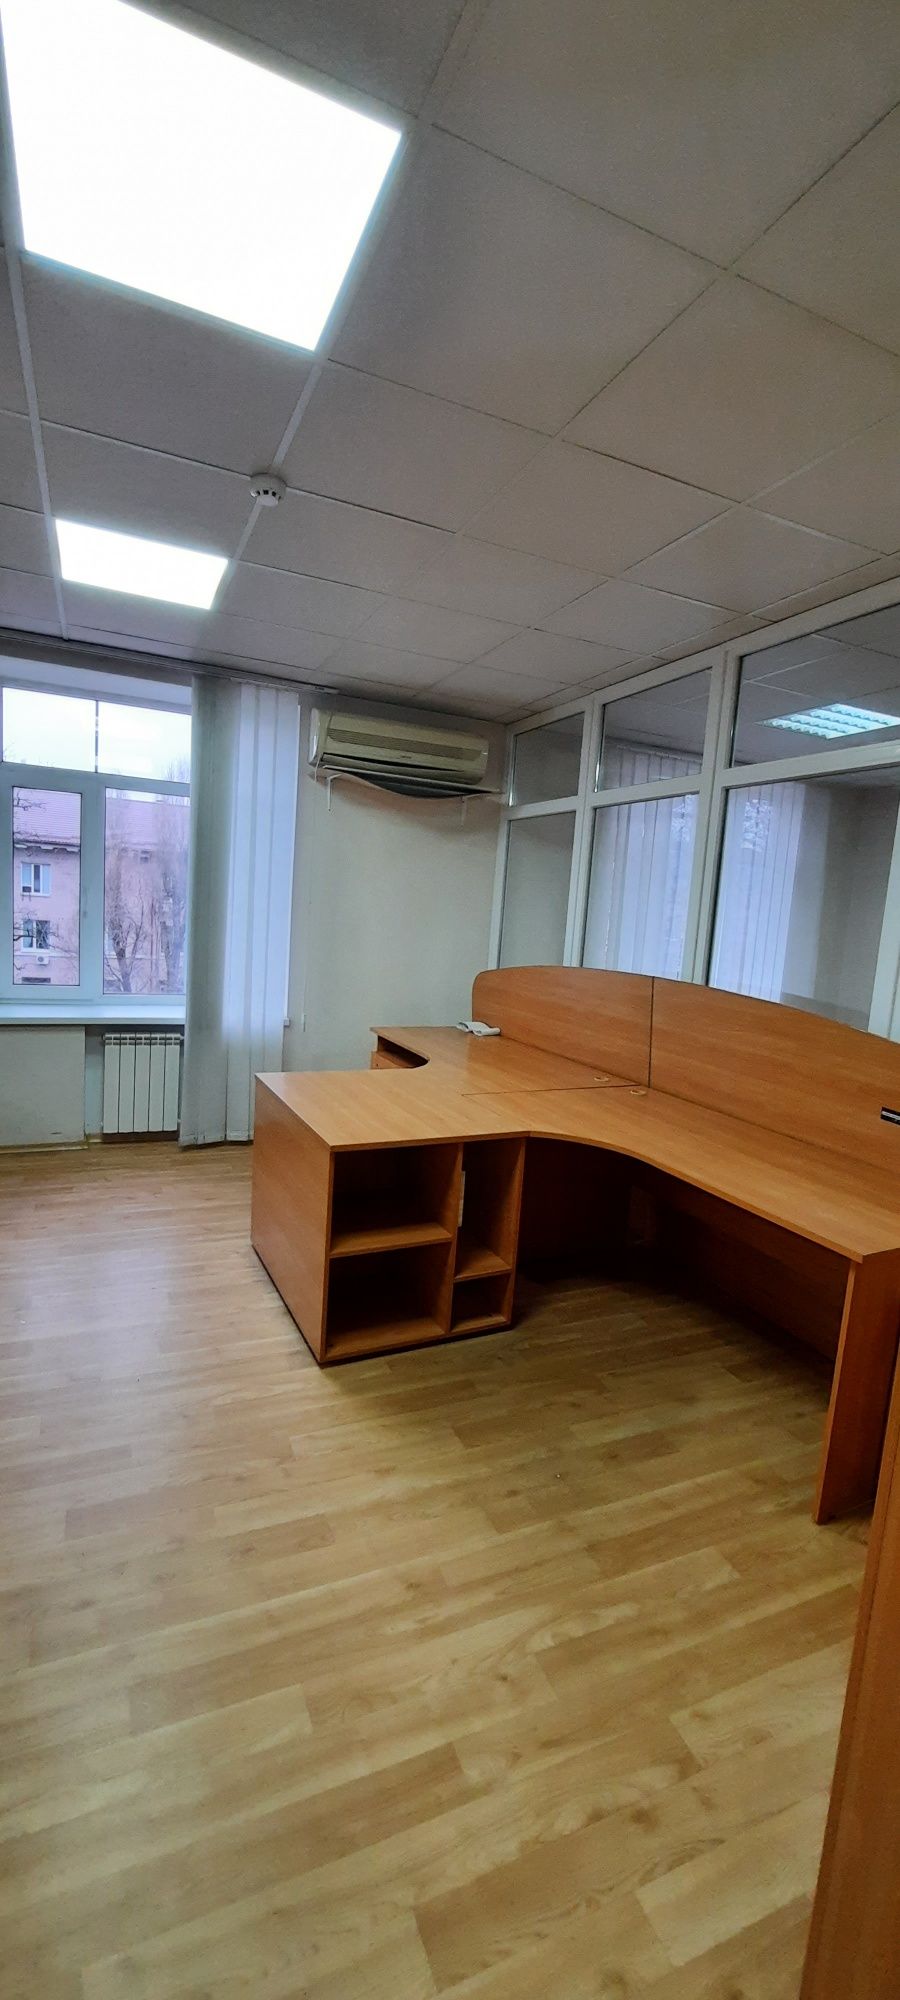 Сдам офисные помещения в р-не б.Шевченко.